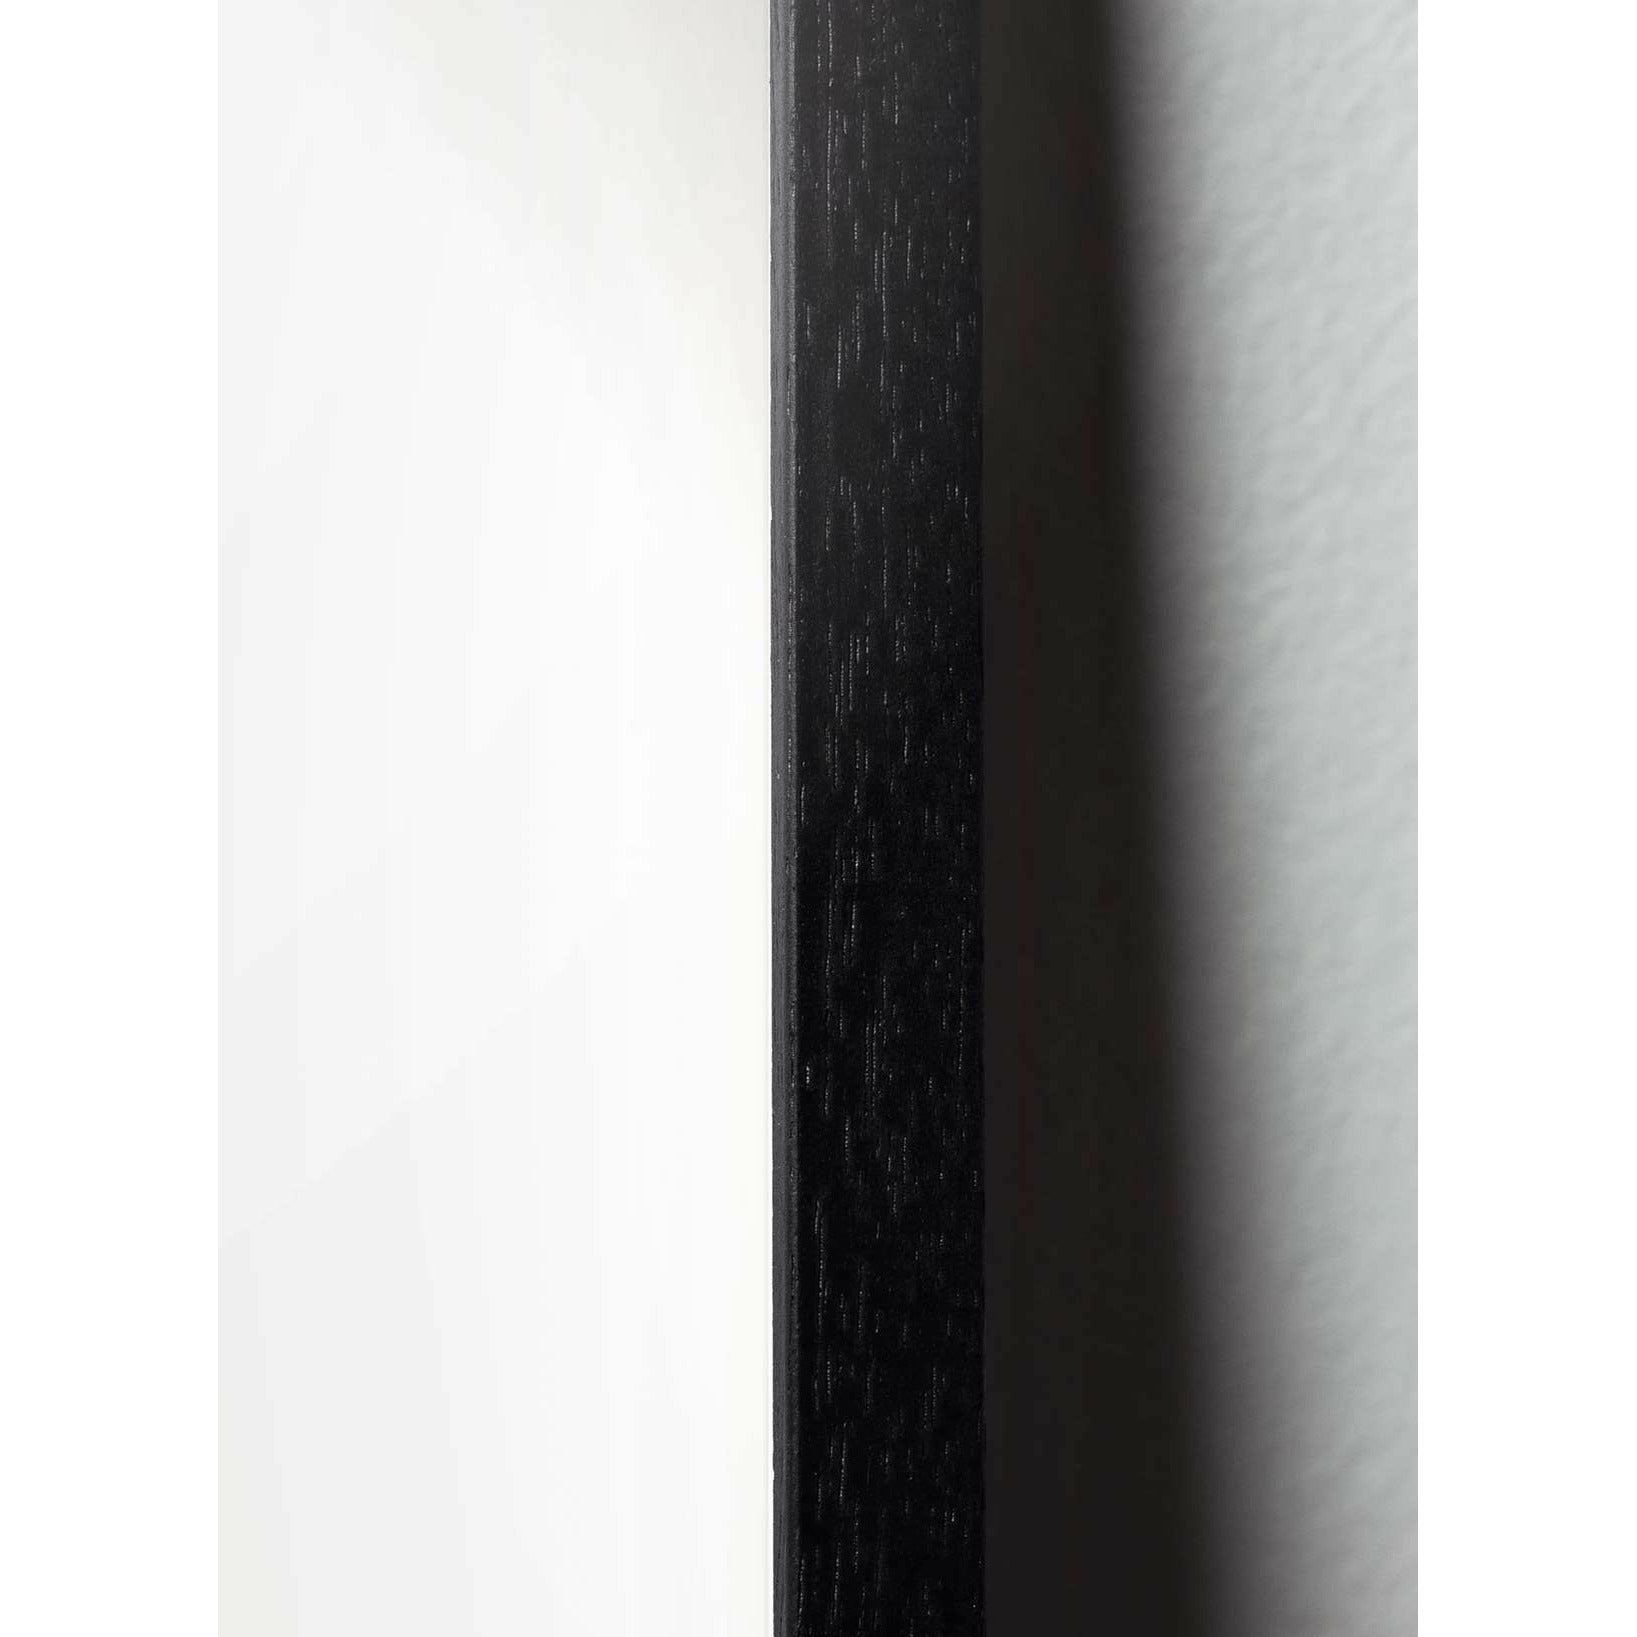 Plakát s labutí linií mozků, rám v černém lakovaném dřevu A5, bílé pozadí